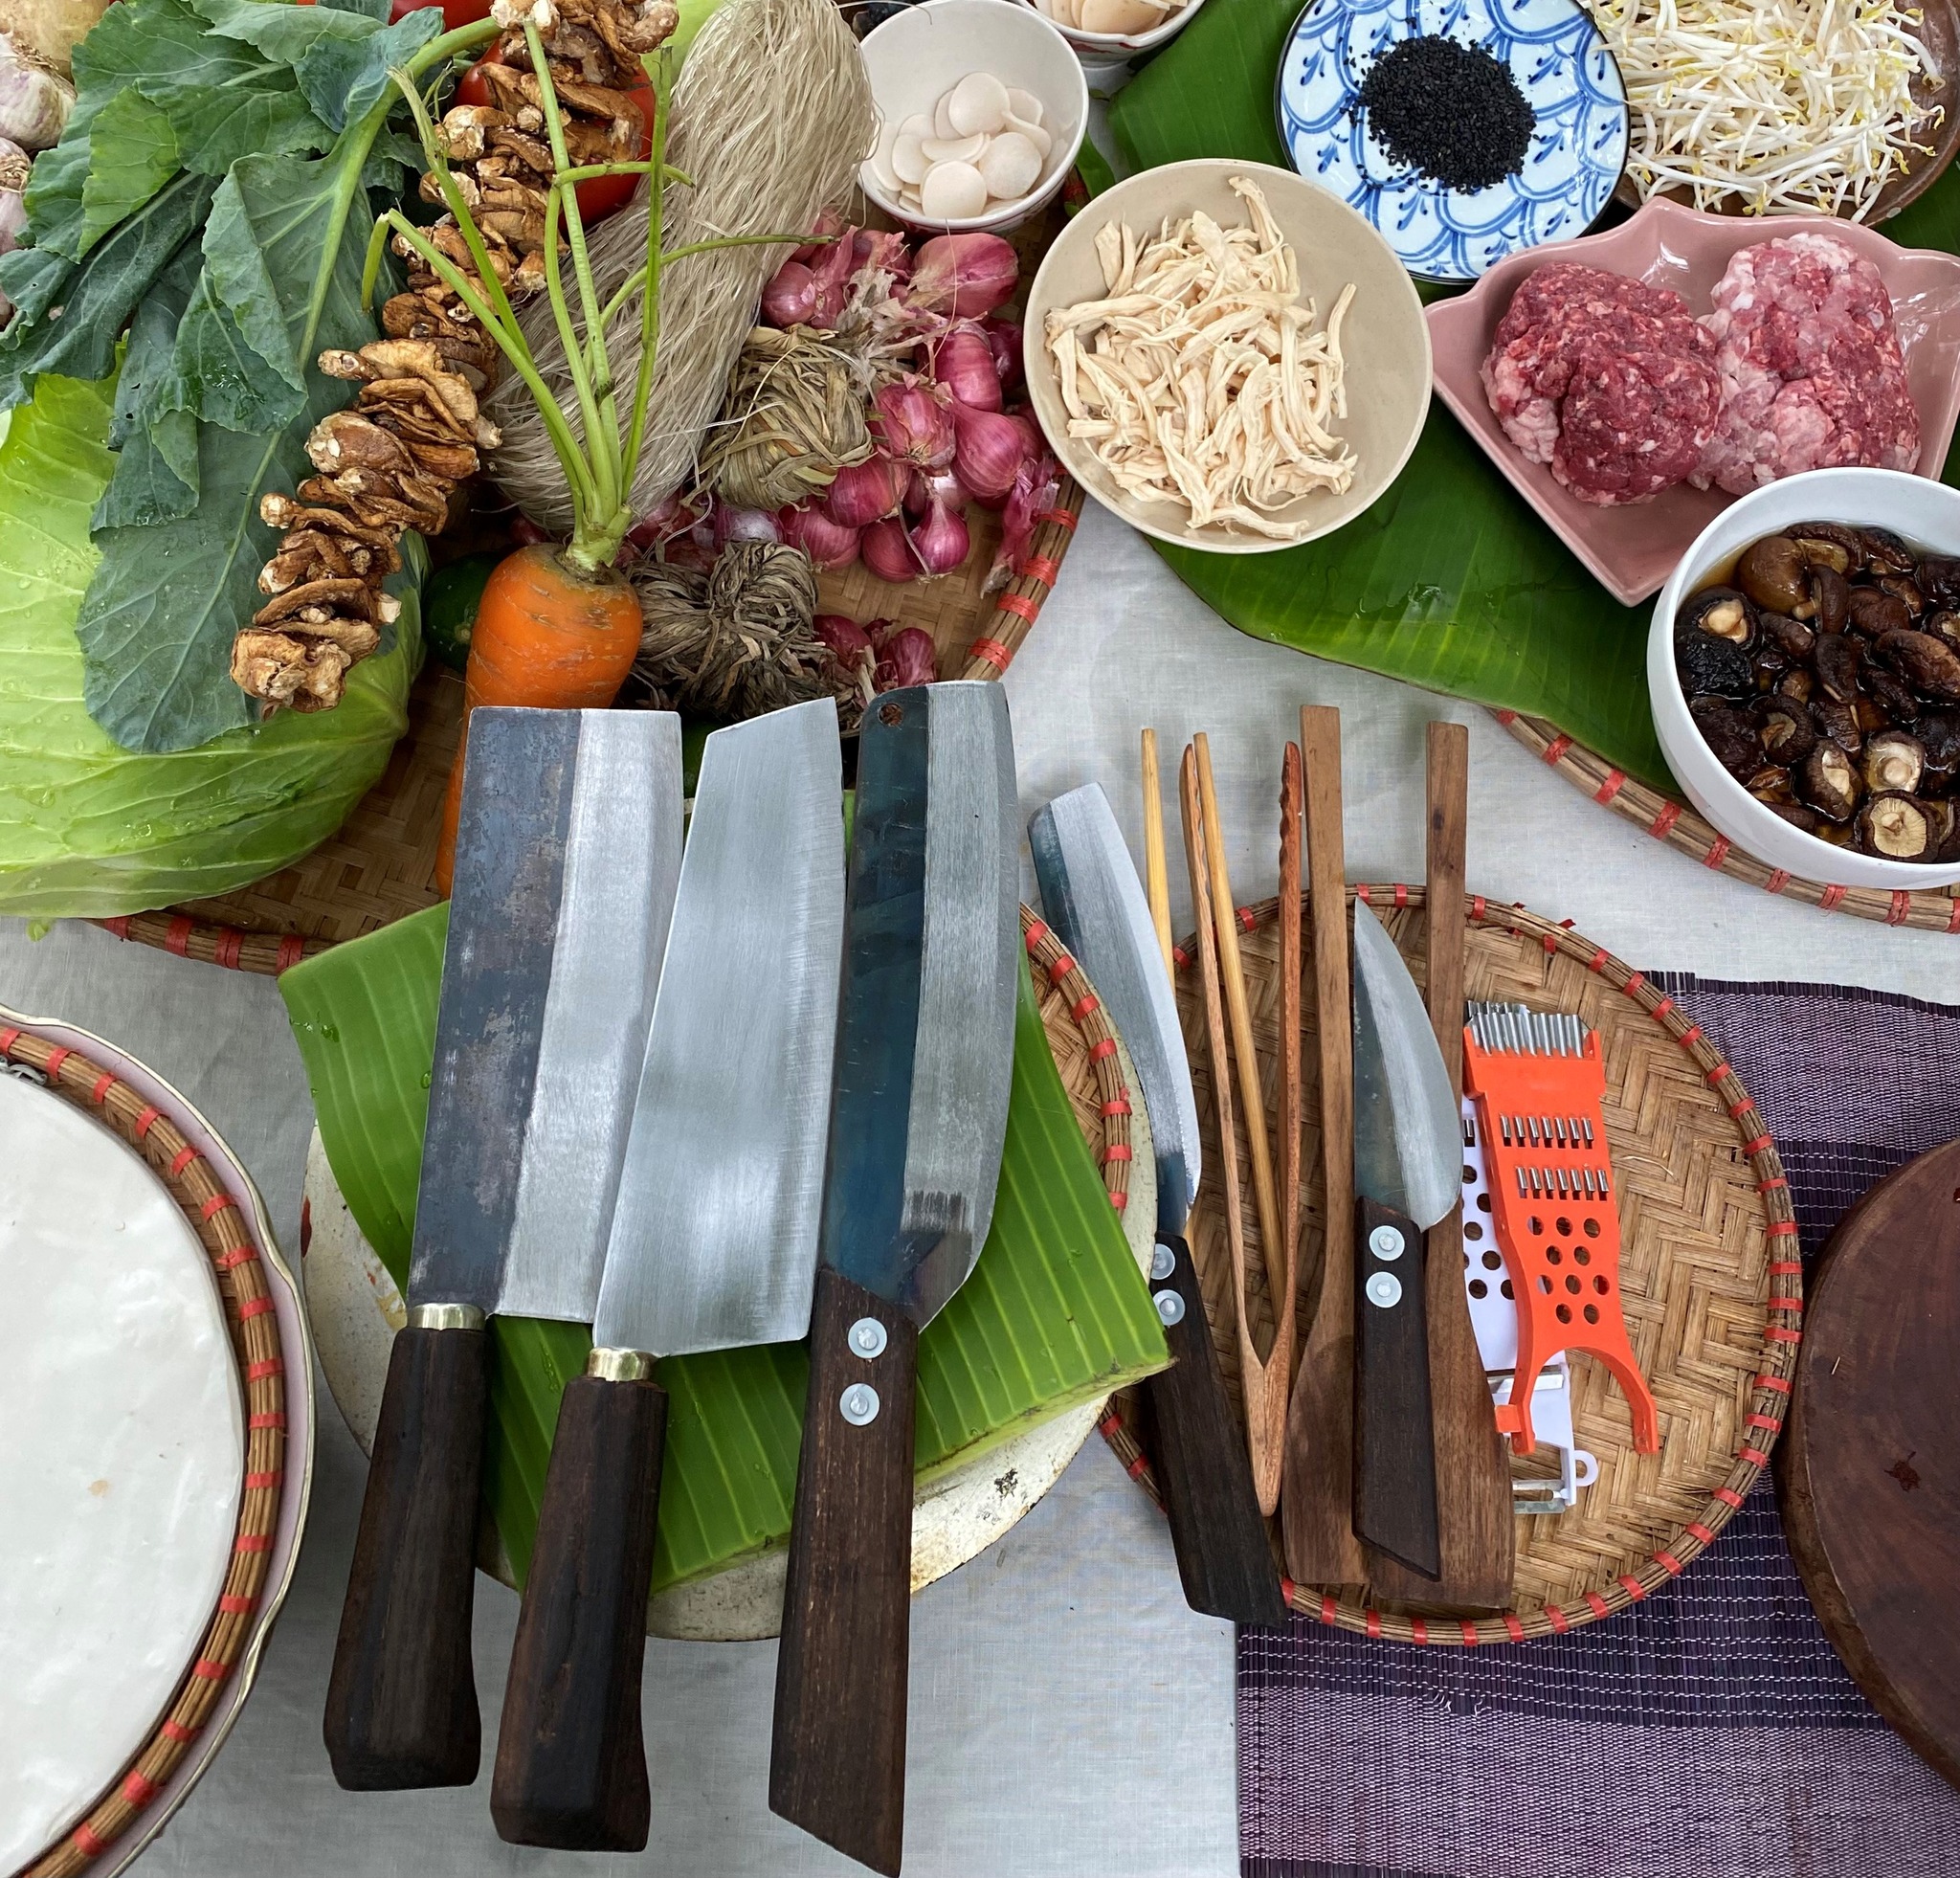 Kochen wie in Vietnam?
Kein Problem mit unseren tollen Messern von AUTHENTIC BLADES!

Wir waren in Vietnam in einer Cookingschool und haben dort mit unseren Messern traditionelle Hanoi springrolls machen dürfen! 

Mehr dazu hier in Kürze 🤩

 #vietnamknives #schmiedekunst #kohlenstoffstahl #scheren #carbonknife #fleischmesser #kochenfürdieseele #kochenmitliebe #vietnameseknives #vietnam #vietnamesefood